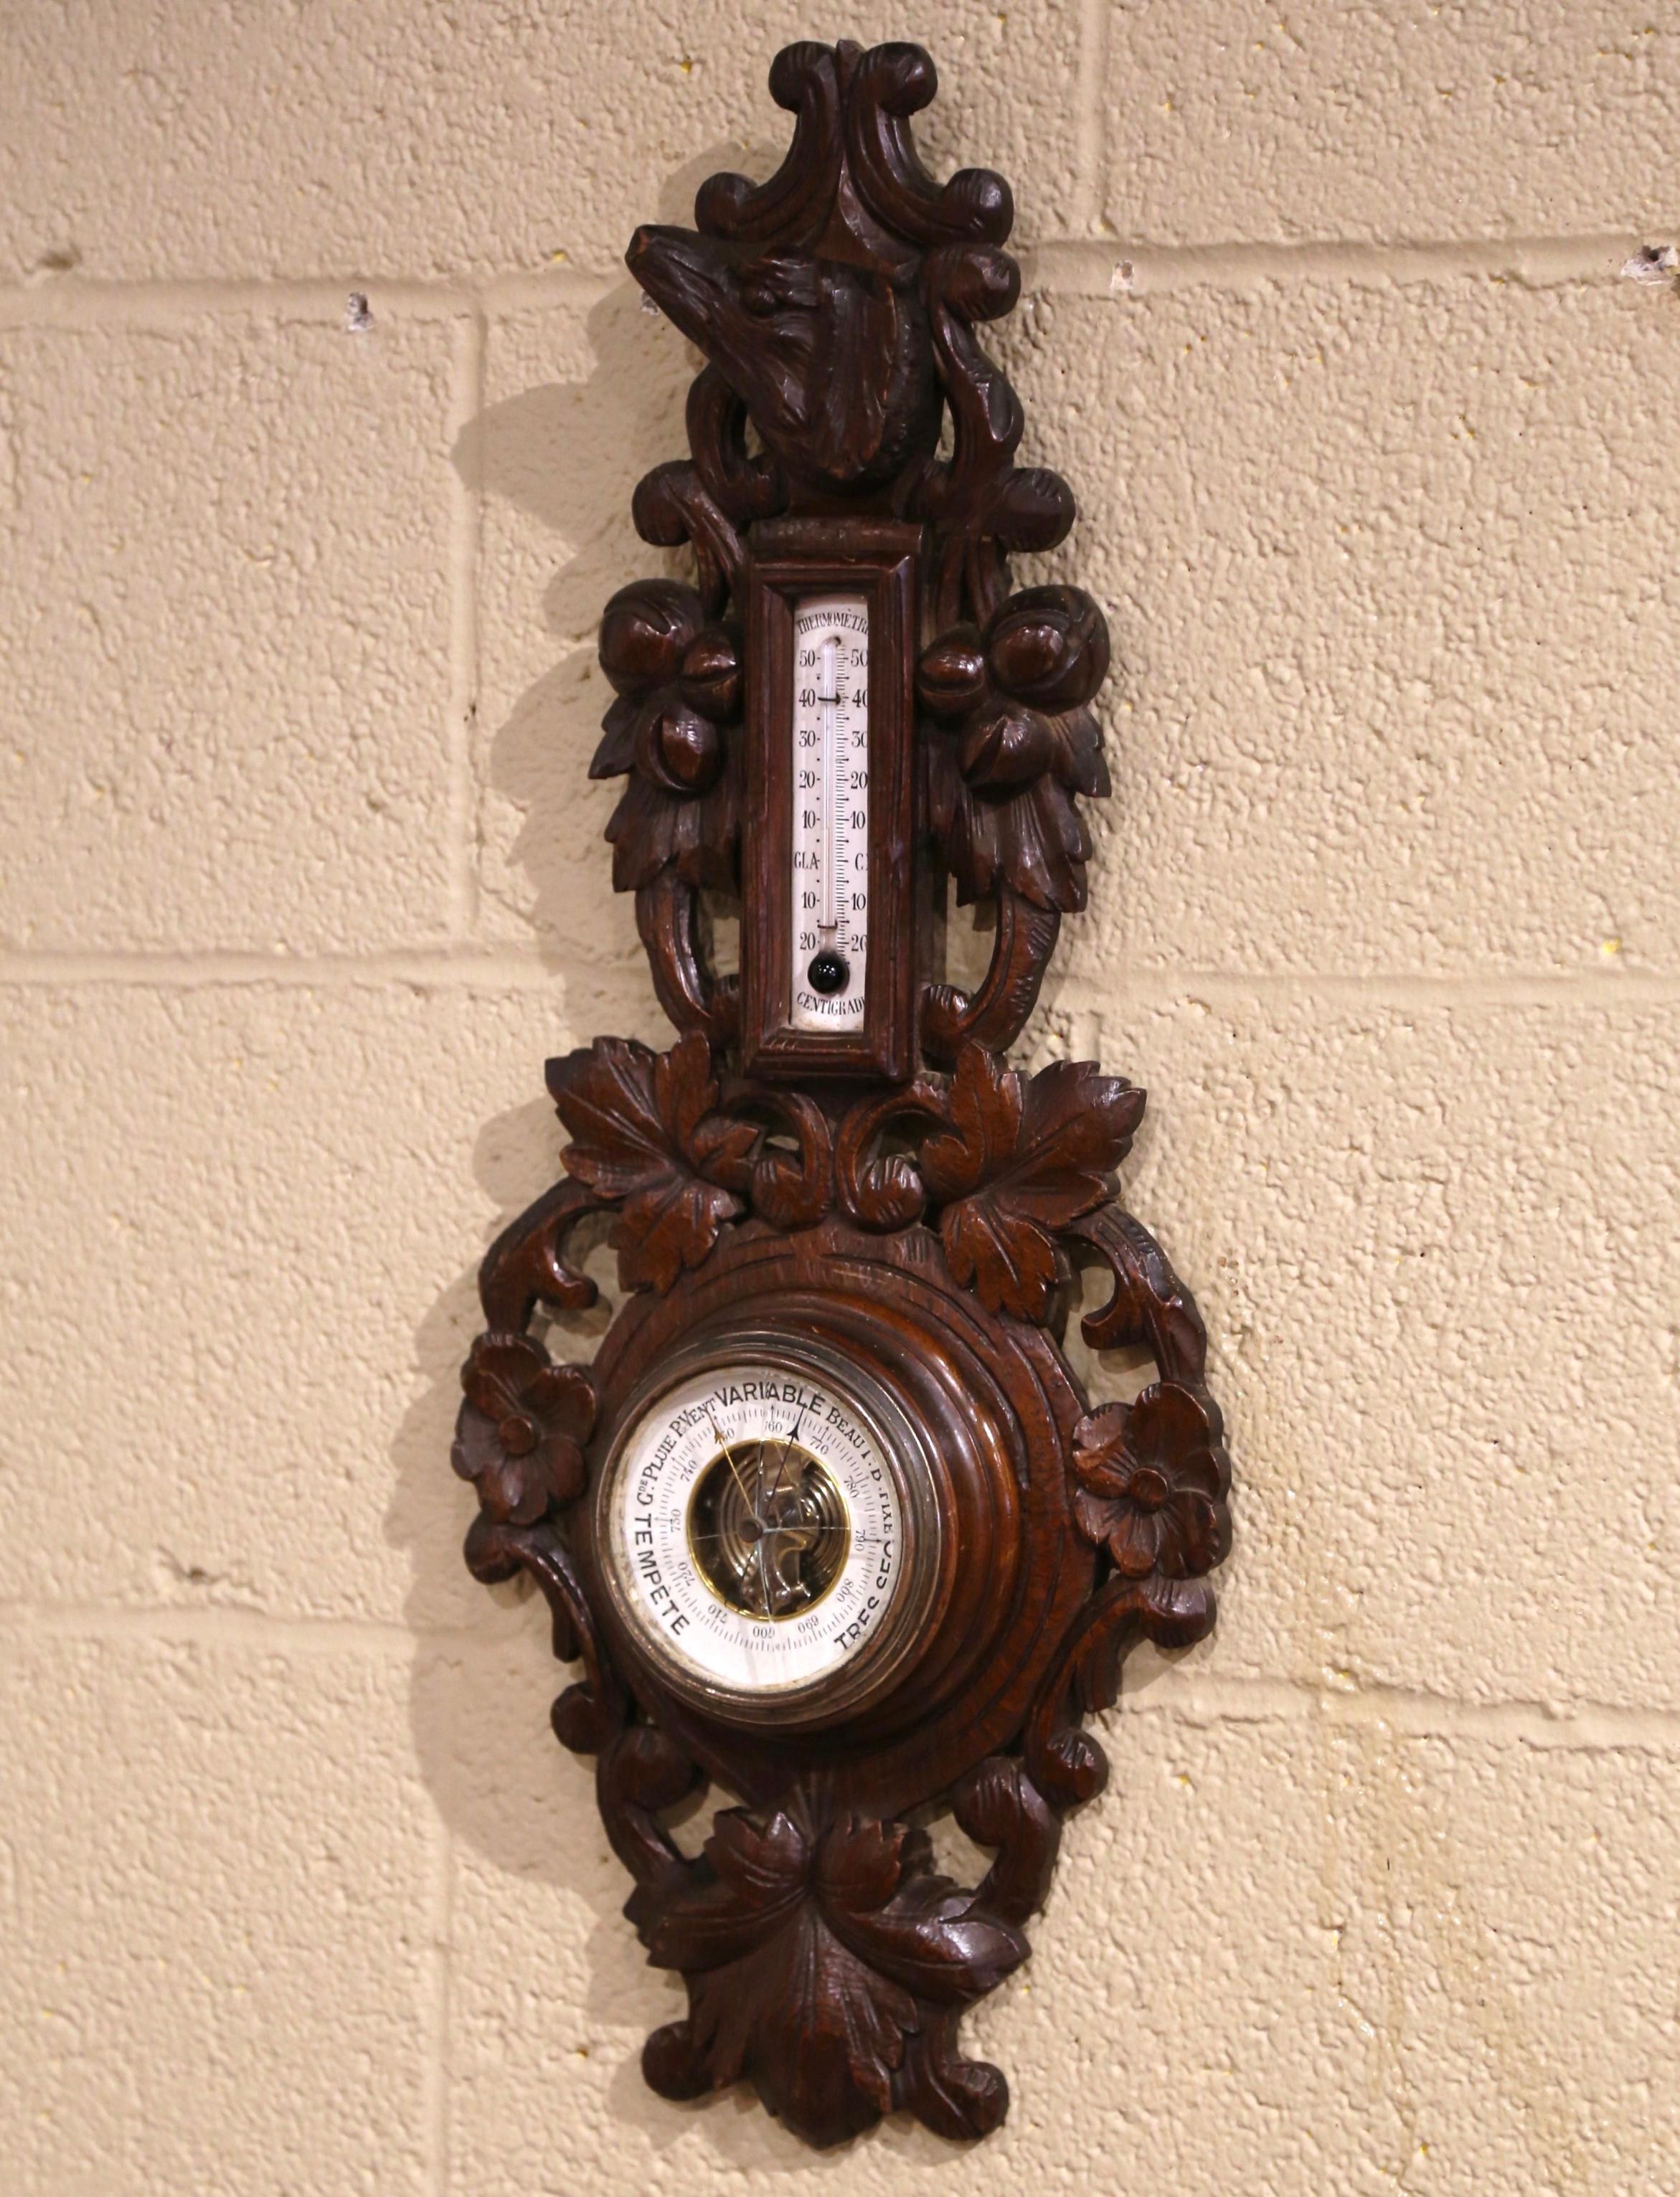 Dieses elegante, antike Wandbarometer und Thermometer wurde um 1890 in Frankreich hergestellt. Der geschnitzte Wetter- und Temperaturanzeiger aus Eichenholz weist beeindruckende, hochreliefierte Schnitzereien mit Eichel- und Blattmotiven auf; er ist